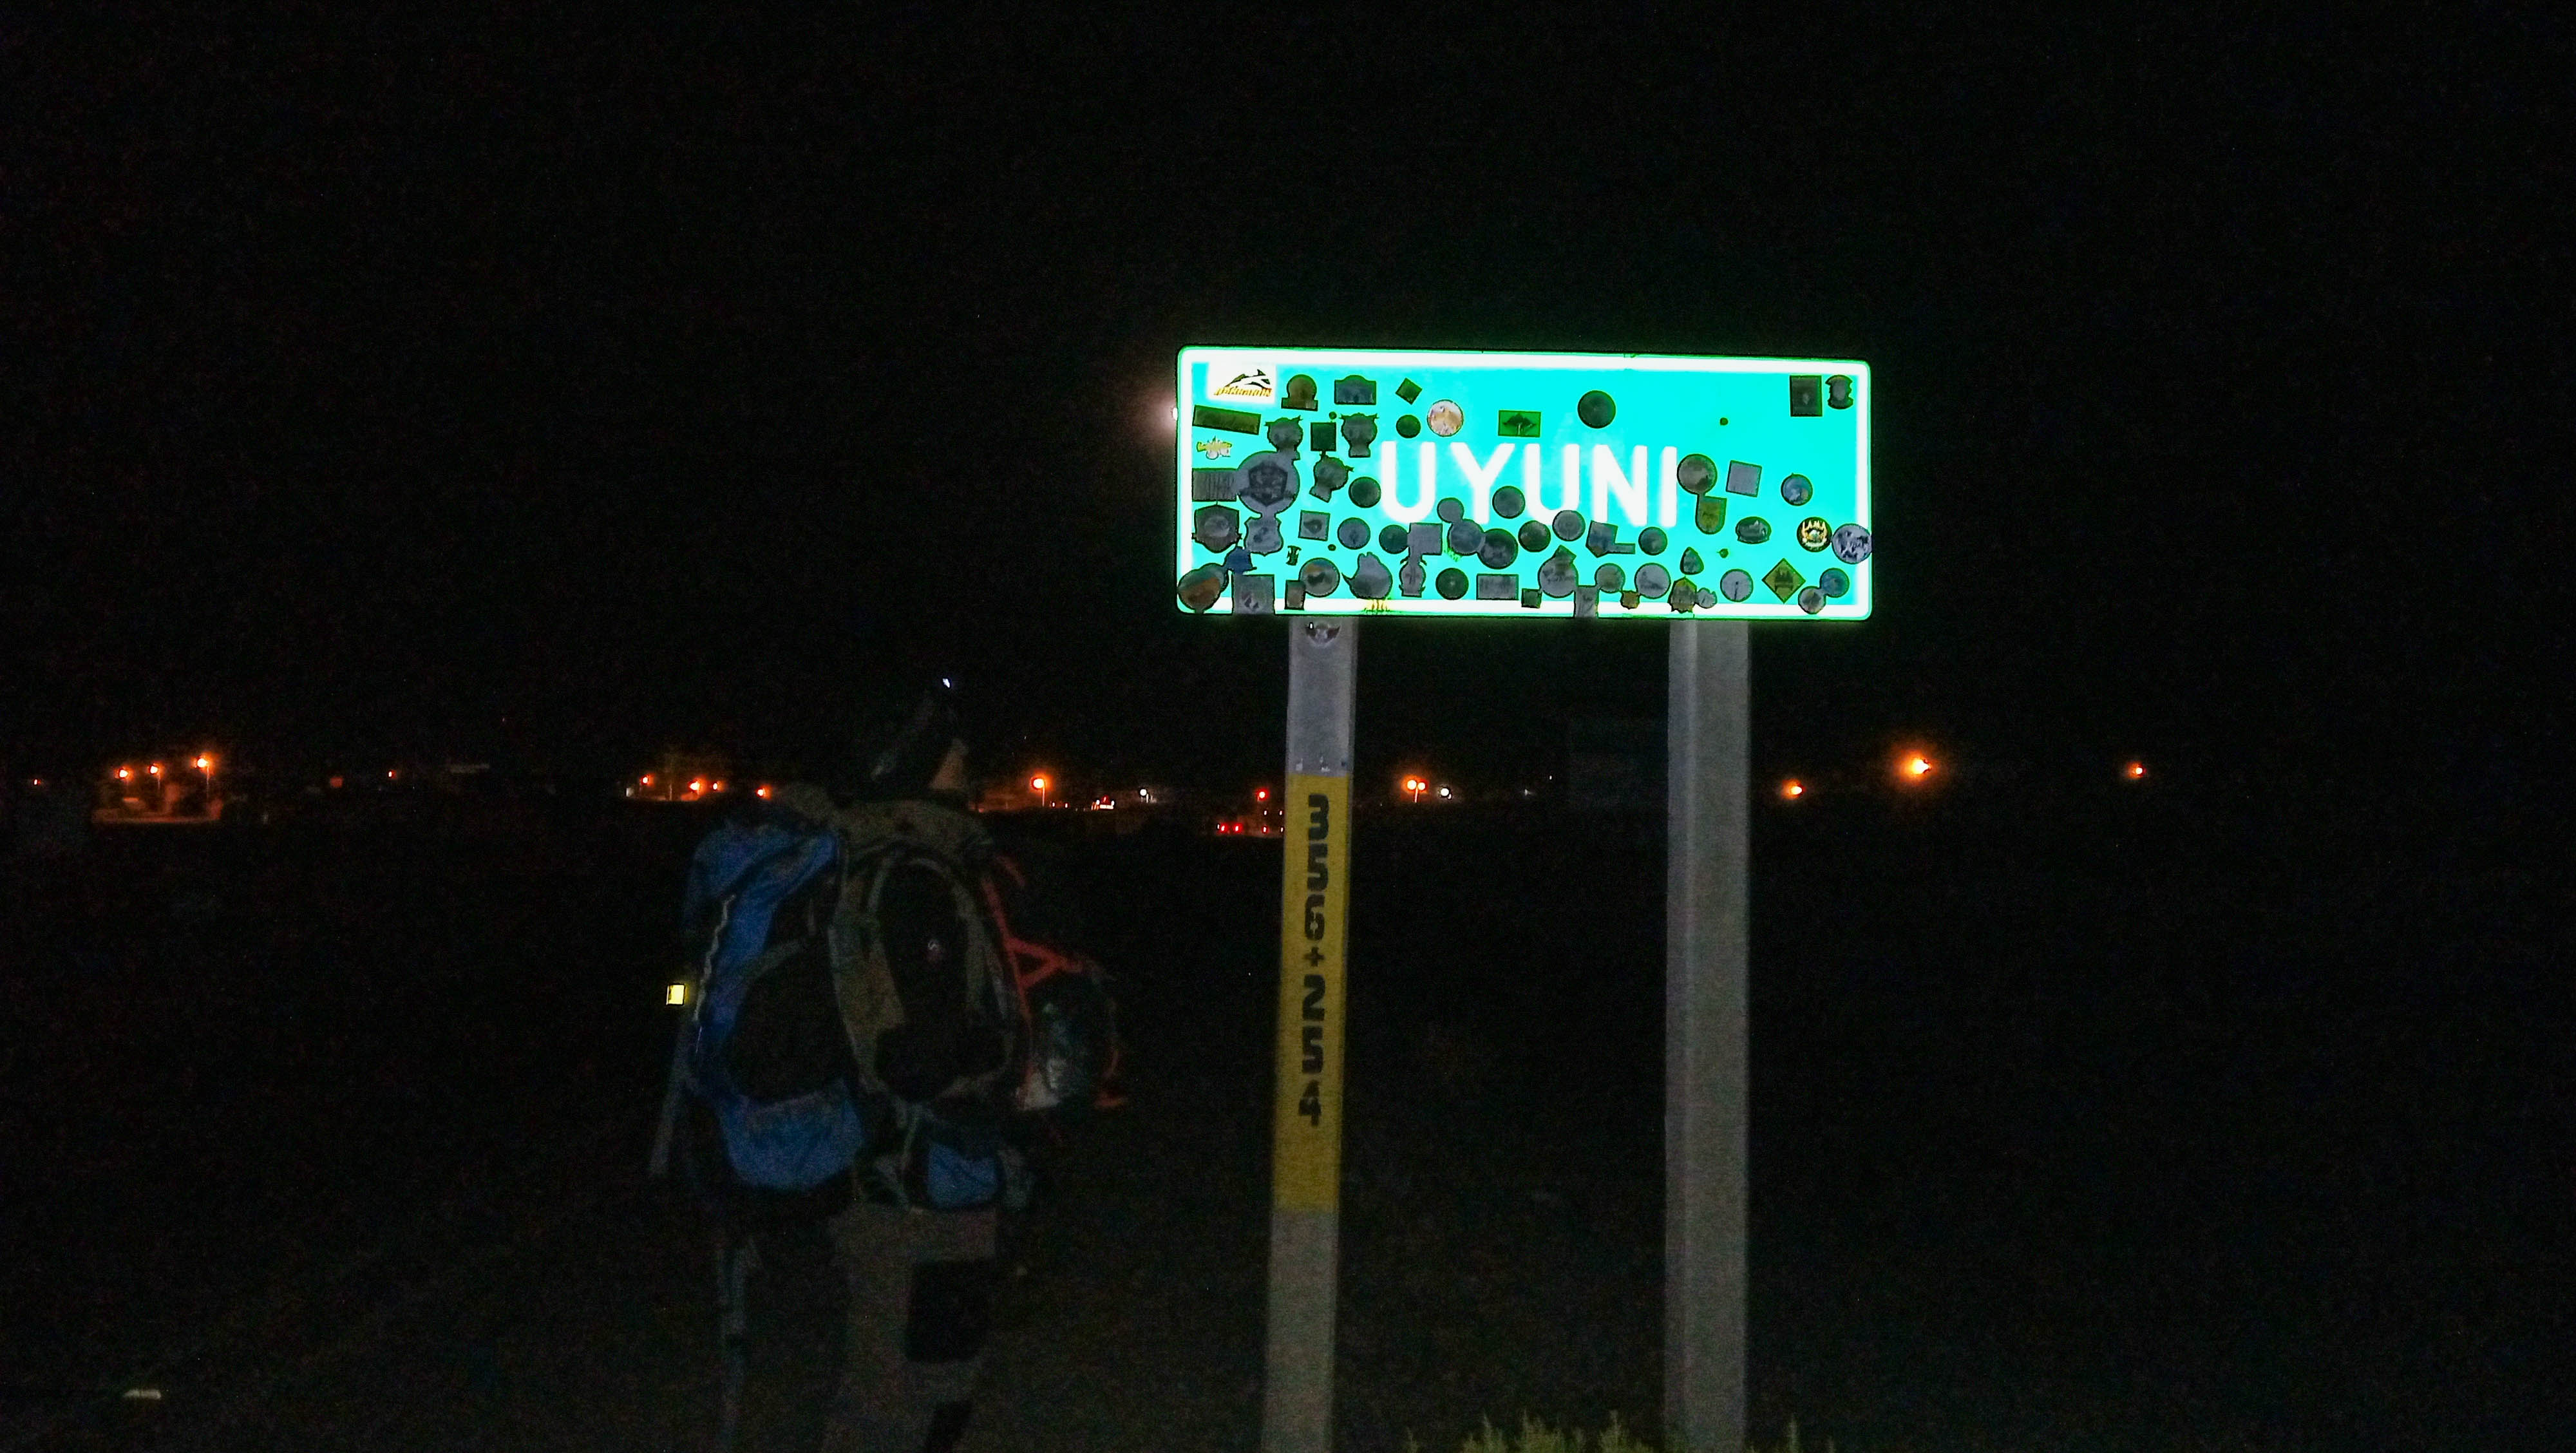 Uprostred noci sme šlapali do Uyuni 4 km. Zlý cestovateľský zážitok, na ktorý teraz o to intenzívnejšie spomíname :)